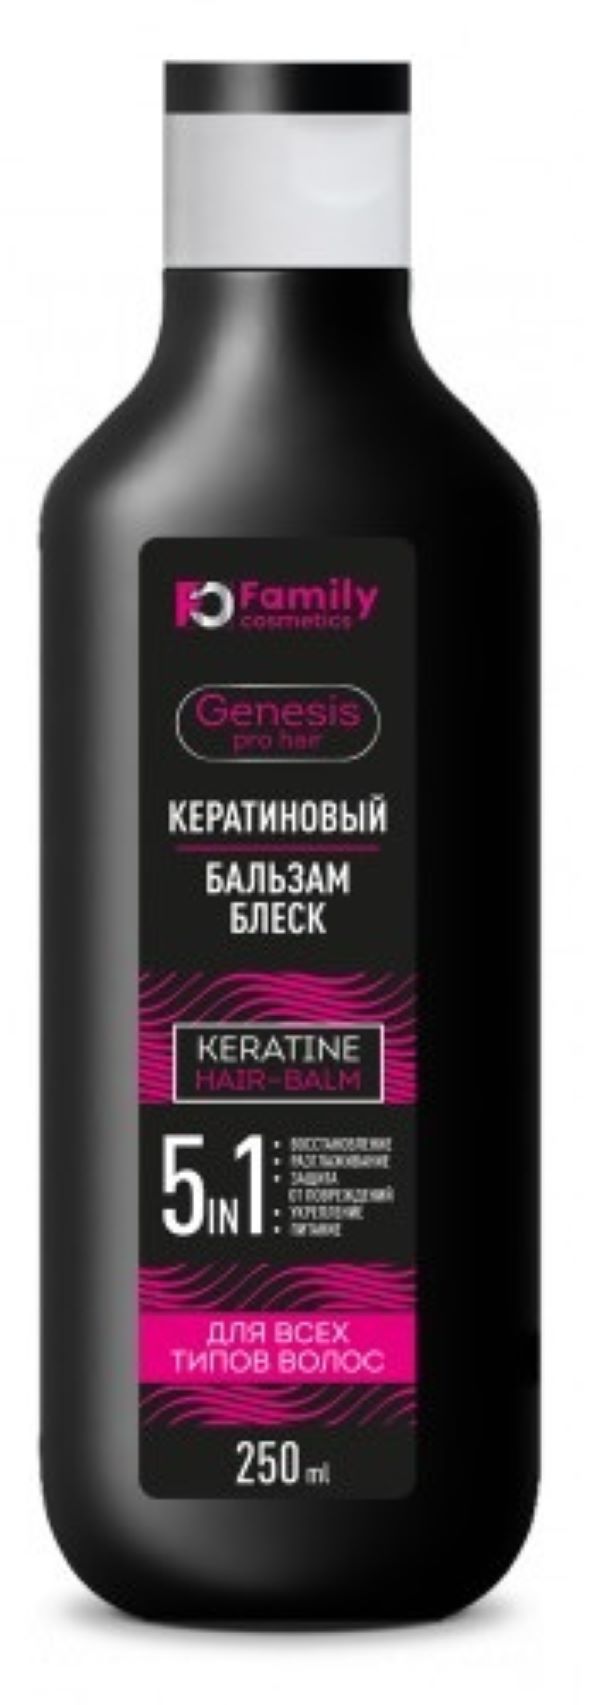 Бальзам Family Cosmetics кератиновый для всех типов волос, 250 мл х 2шт. бальзам ополаскиватель pantene pro v miracles шелк и сияние 200 мл